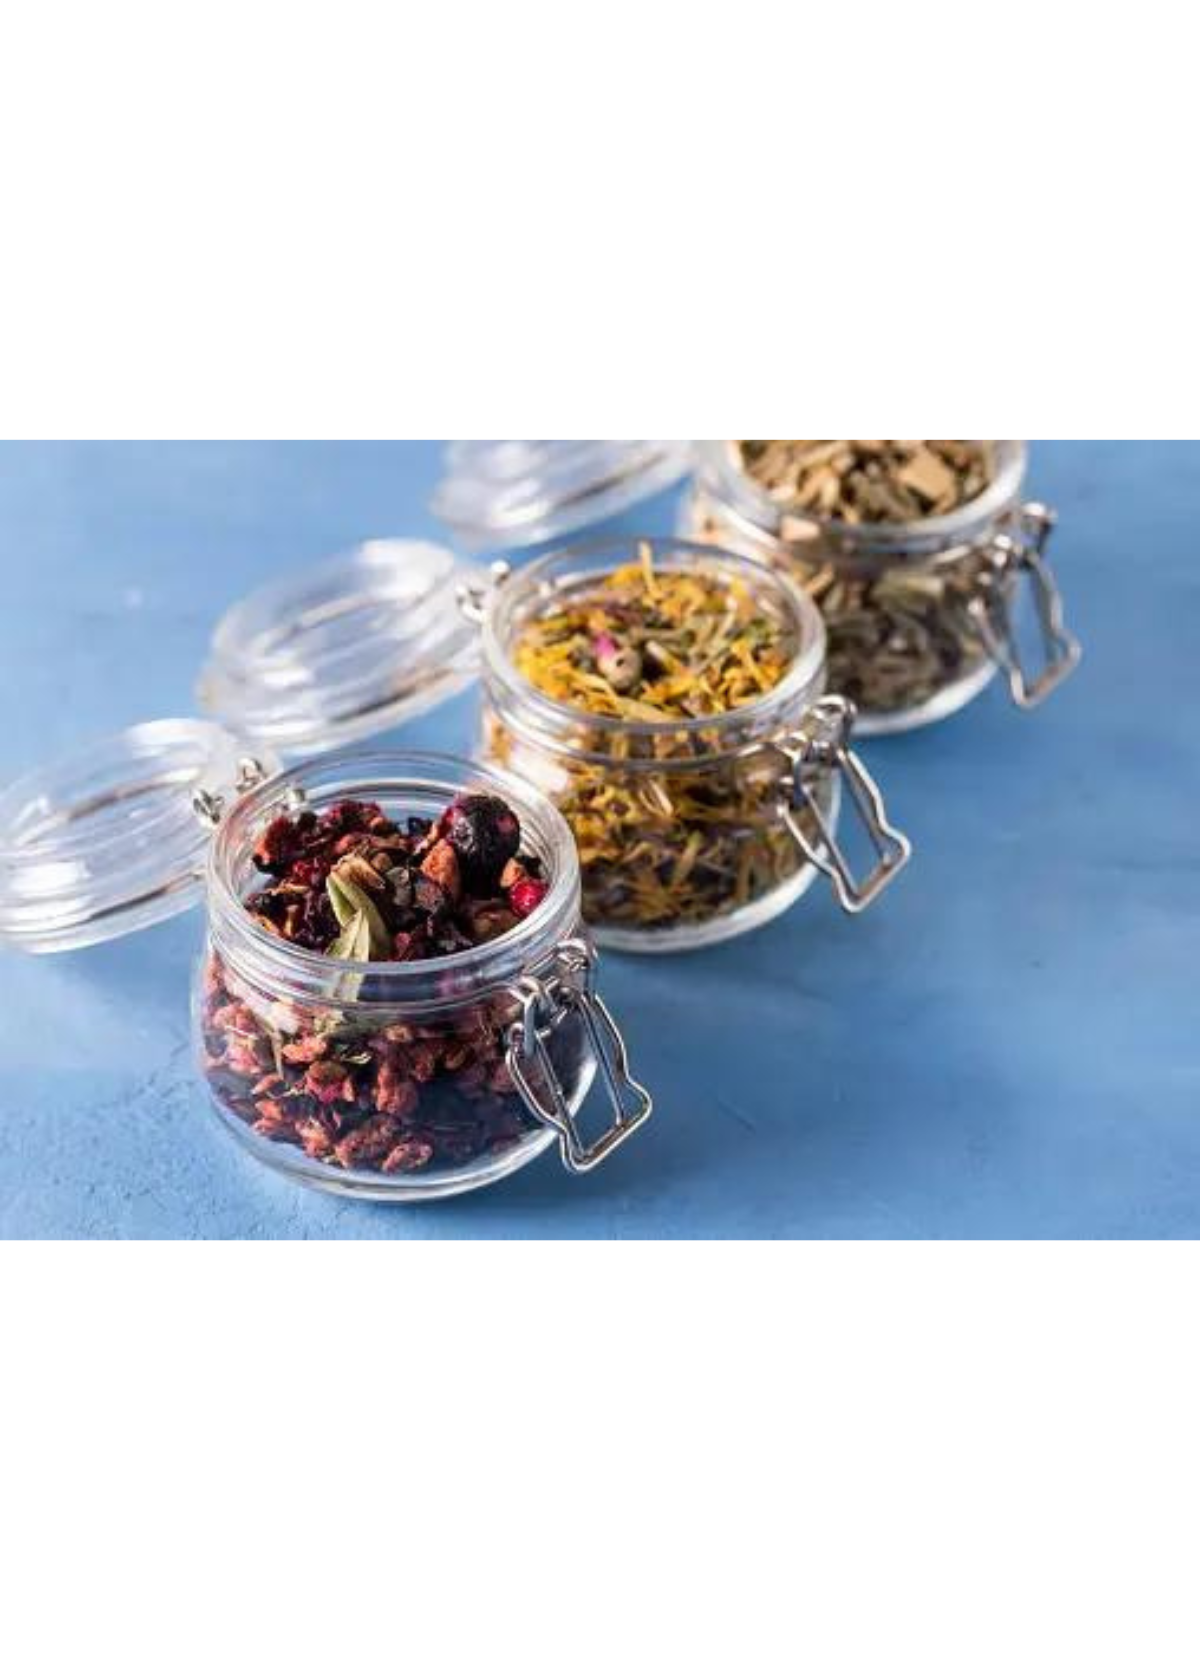 Unlock Premium Quality and Taste with Loose Leaf teas!